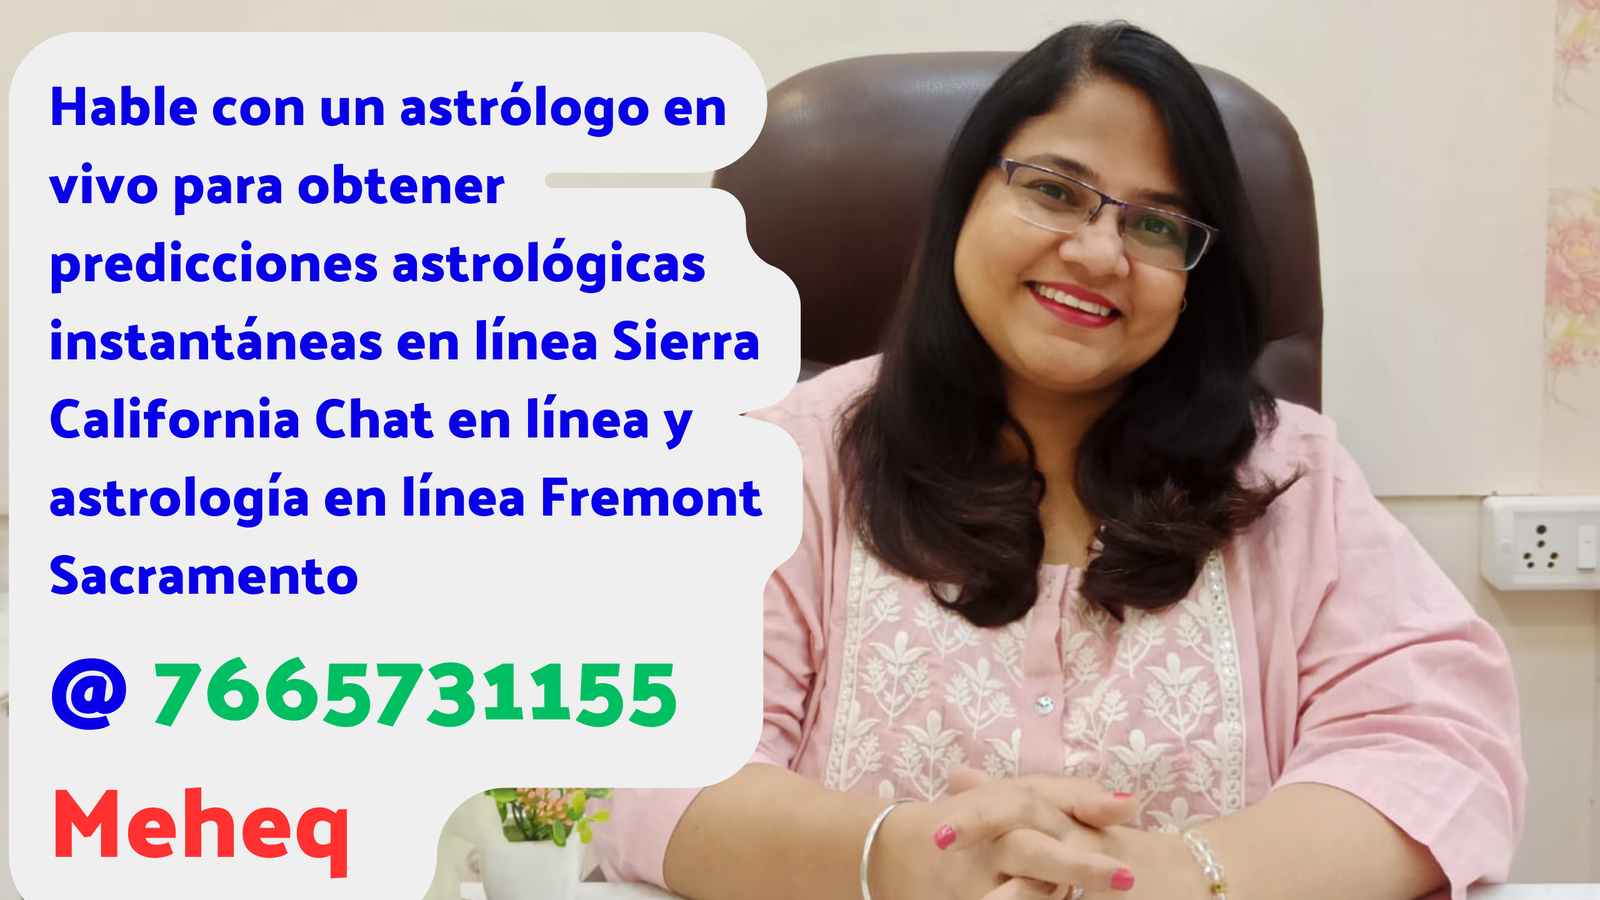 Hable con un astrólogo en vivo para obtener predicciones astrológicas instantáneas en línea Sierra California Chat en línea y astrología en línea Fremont Sacramento